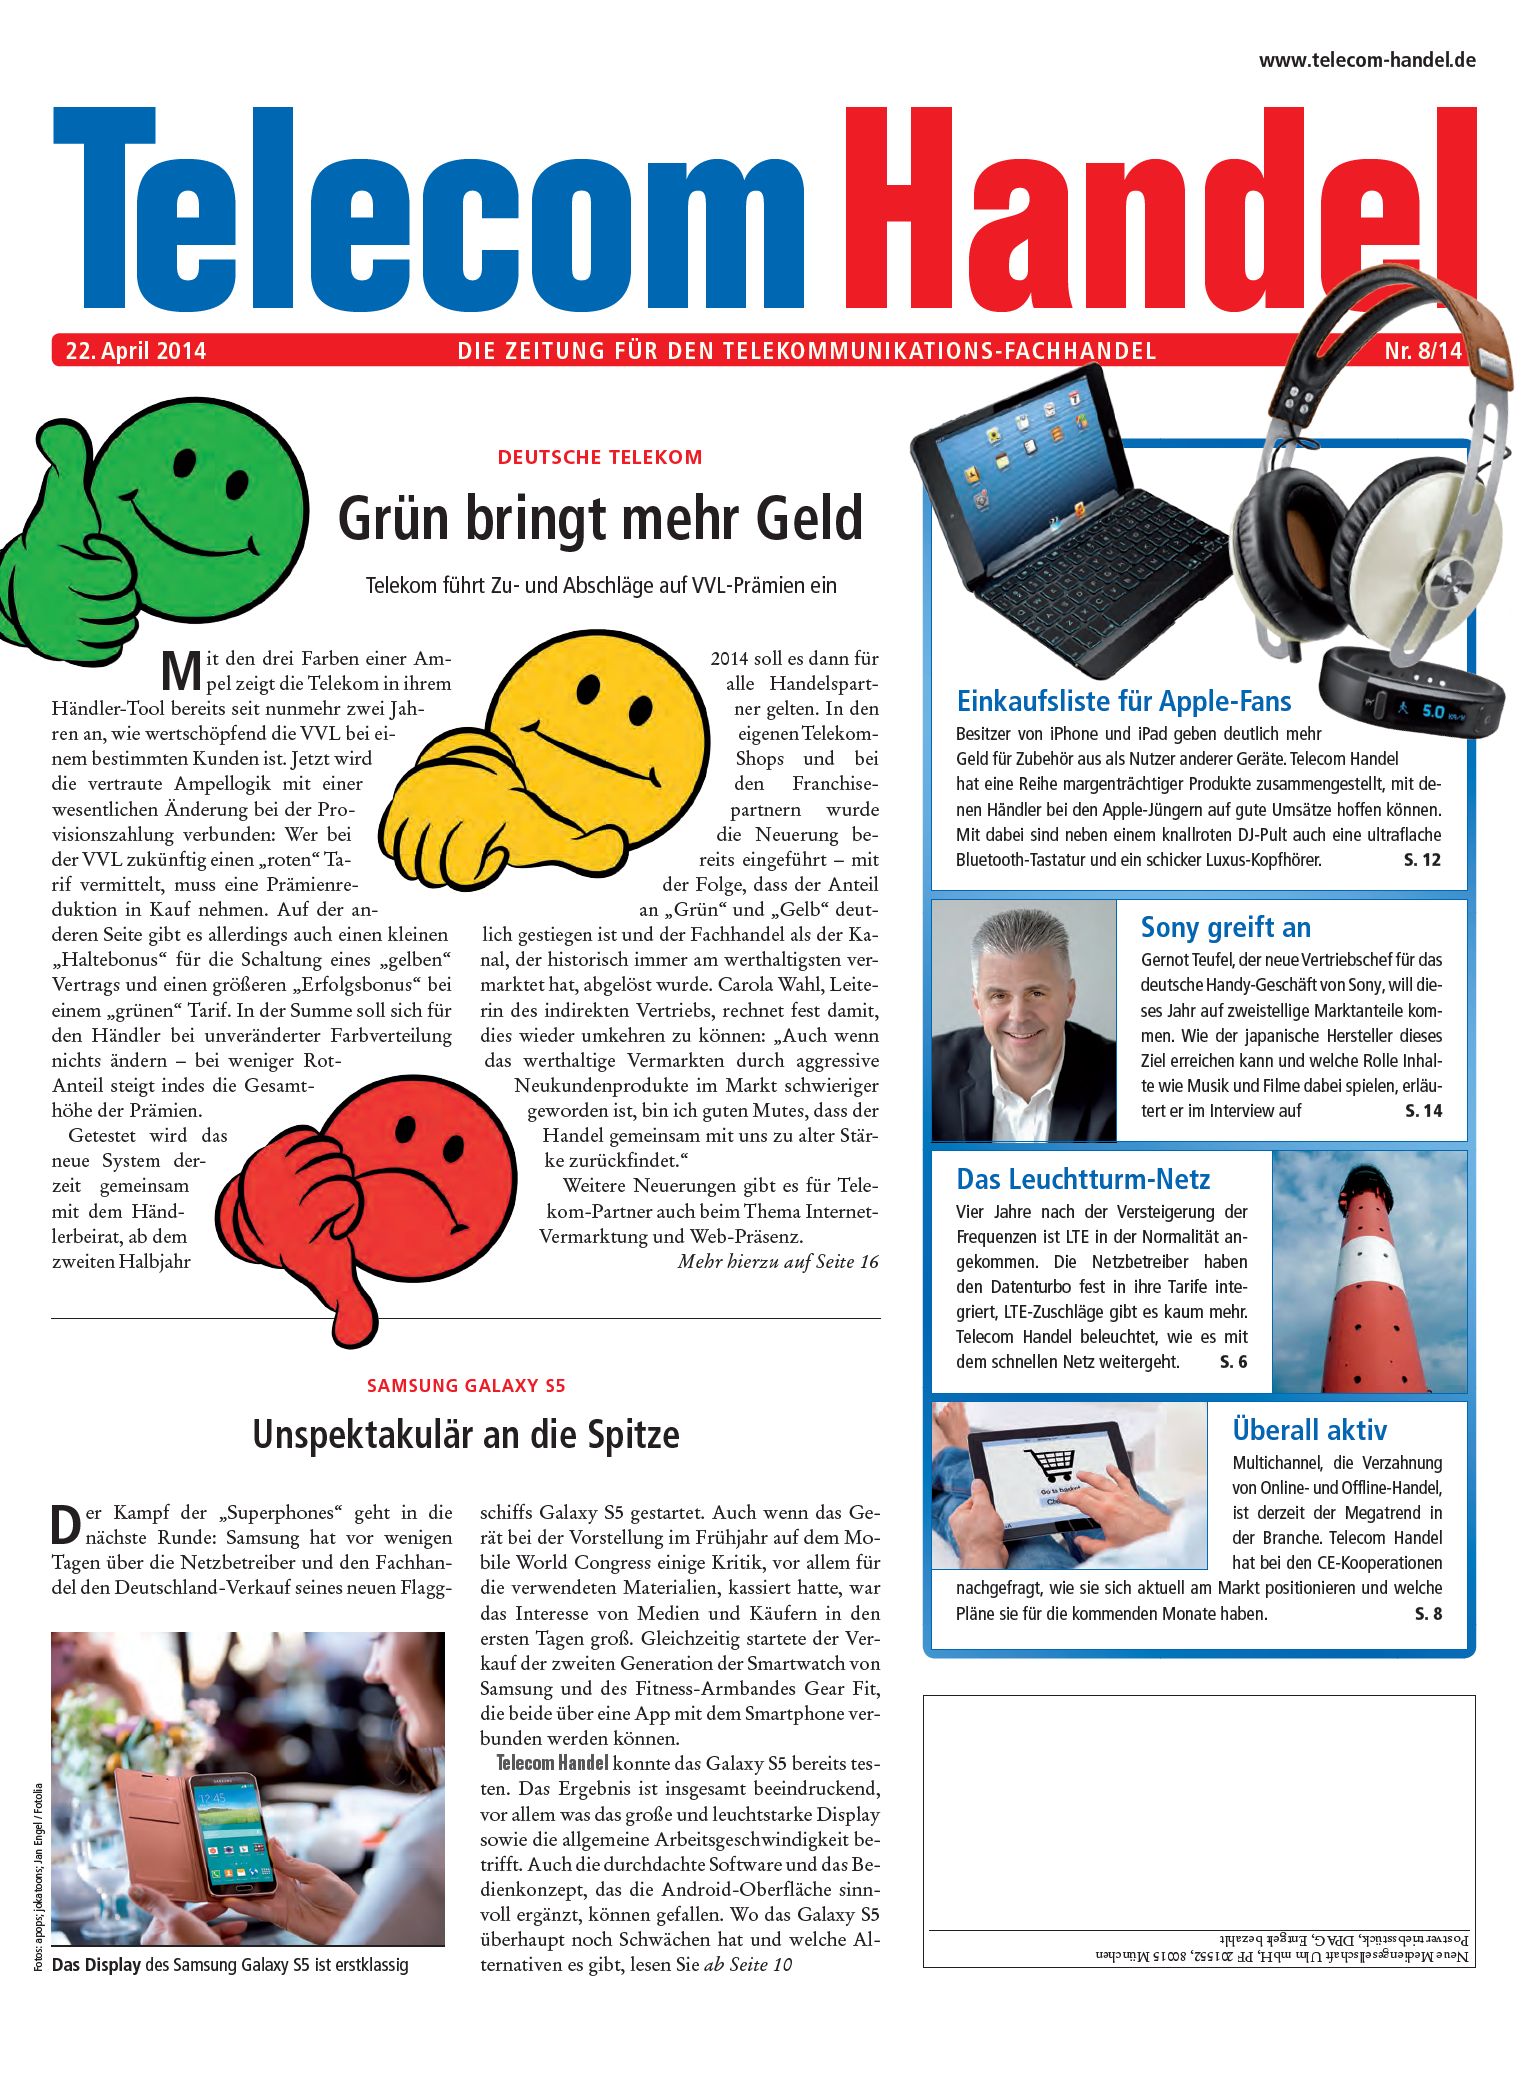 Telecom Handel Ausgabe 08/2014